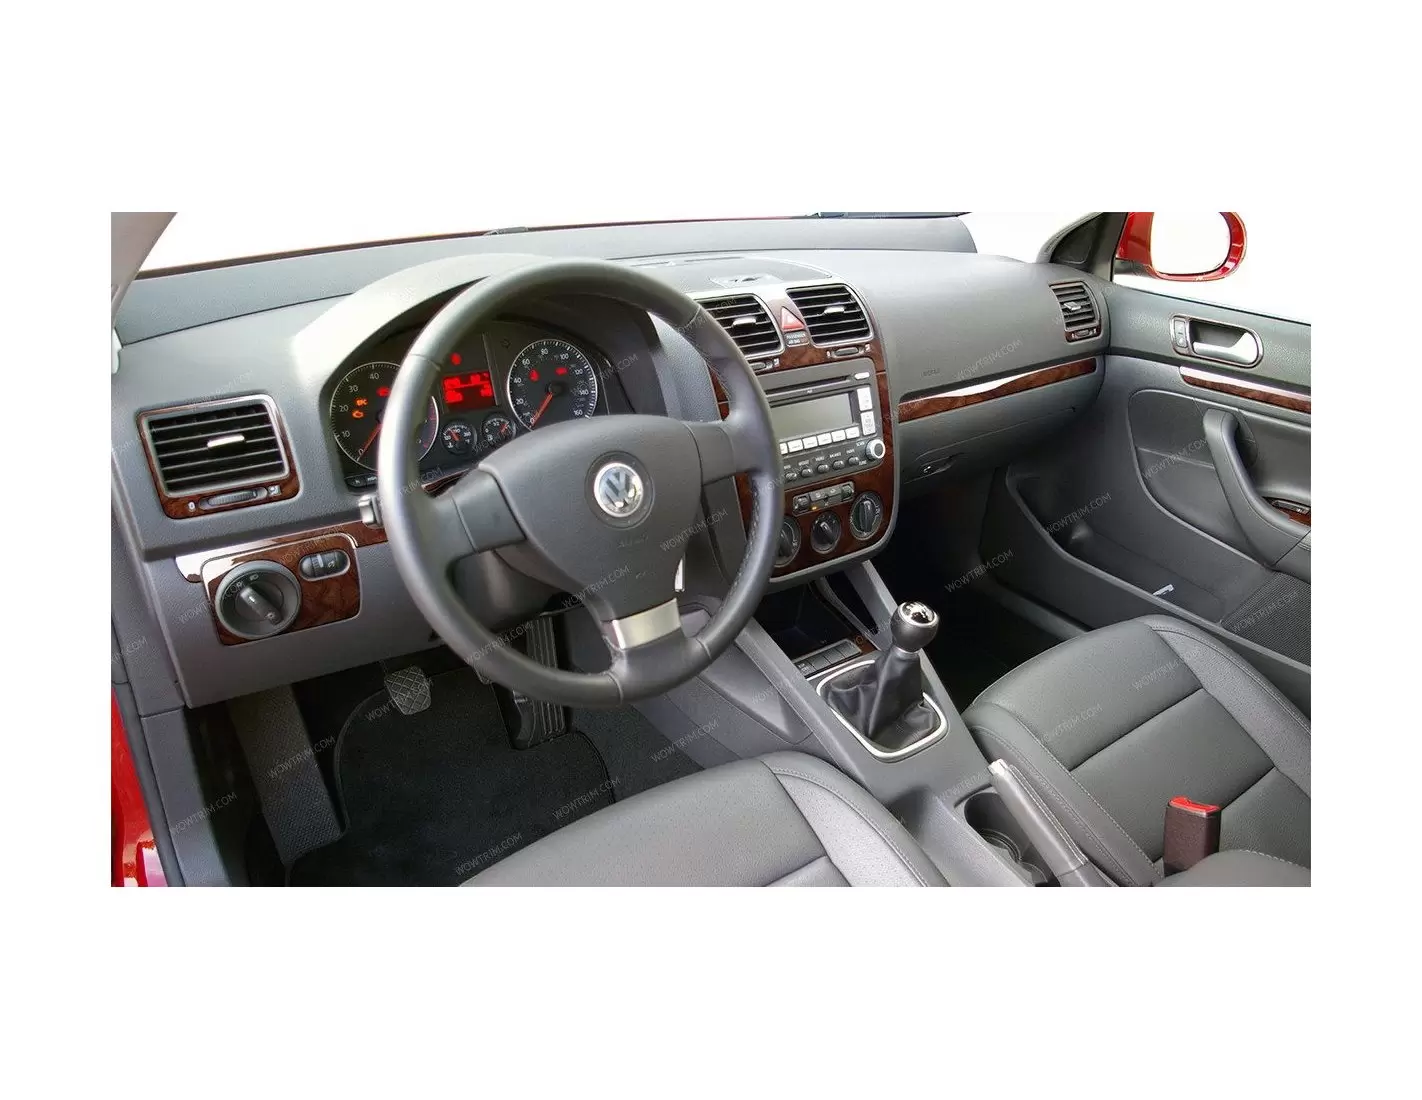 Volkswagen Jetta 2010-2010 Voll Satz, Automatic Gear BD innenausstattung armaturendekor cockpit dekor - 1- Cockpit Dekor Innenra